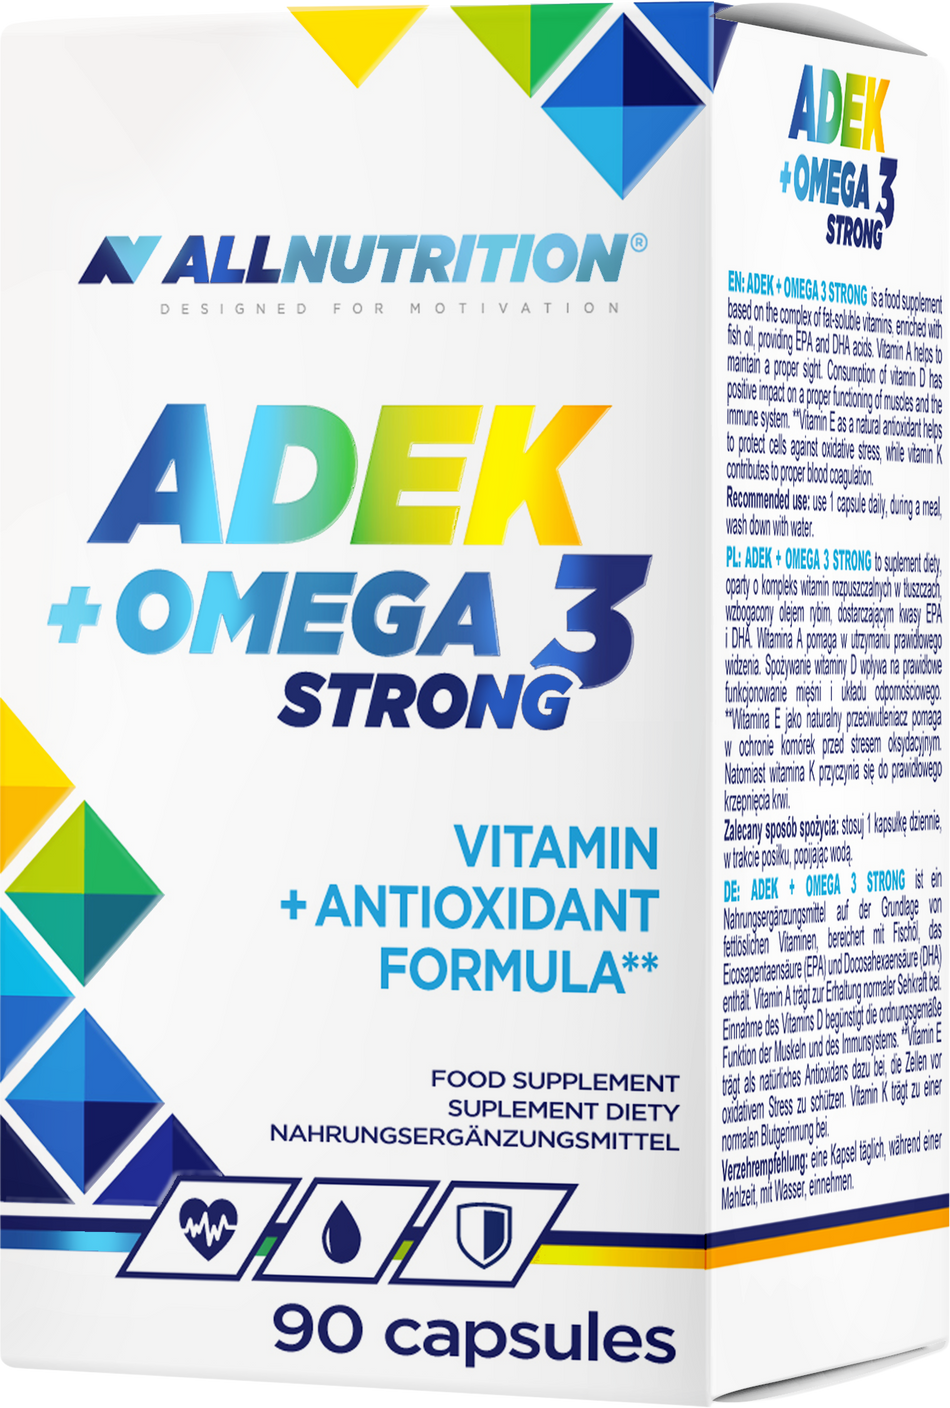 ADEK + Omega 3 Strong